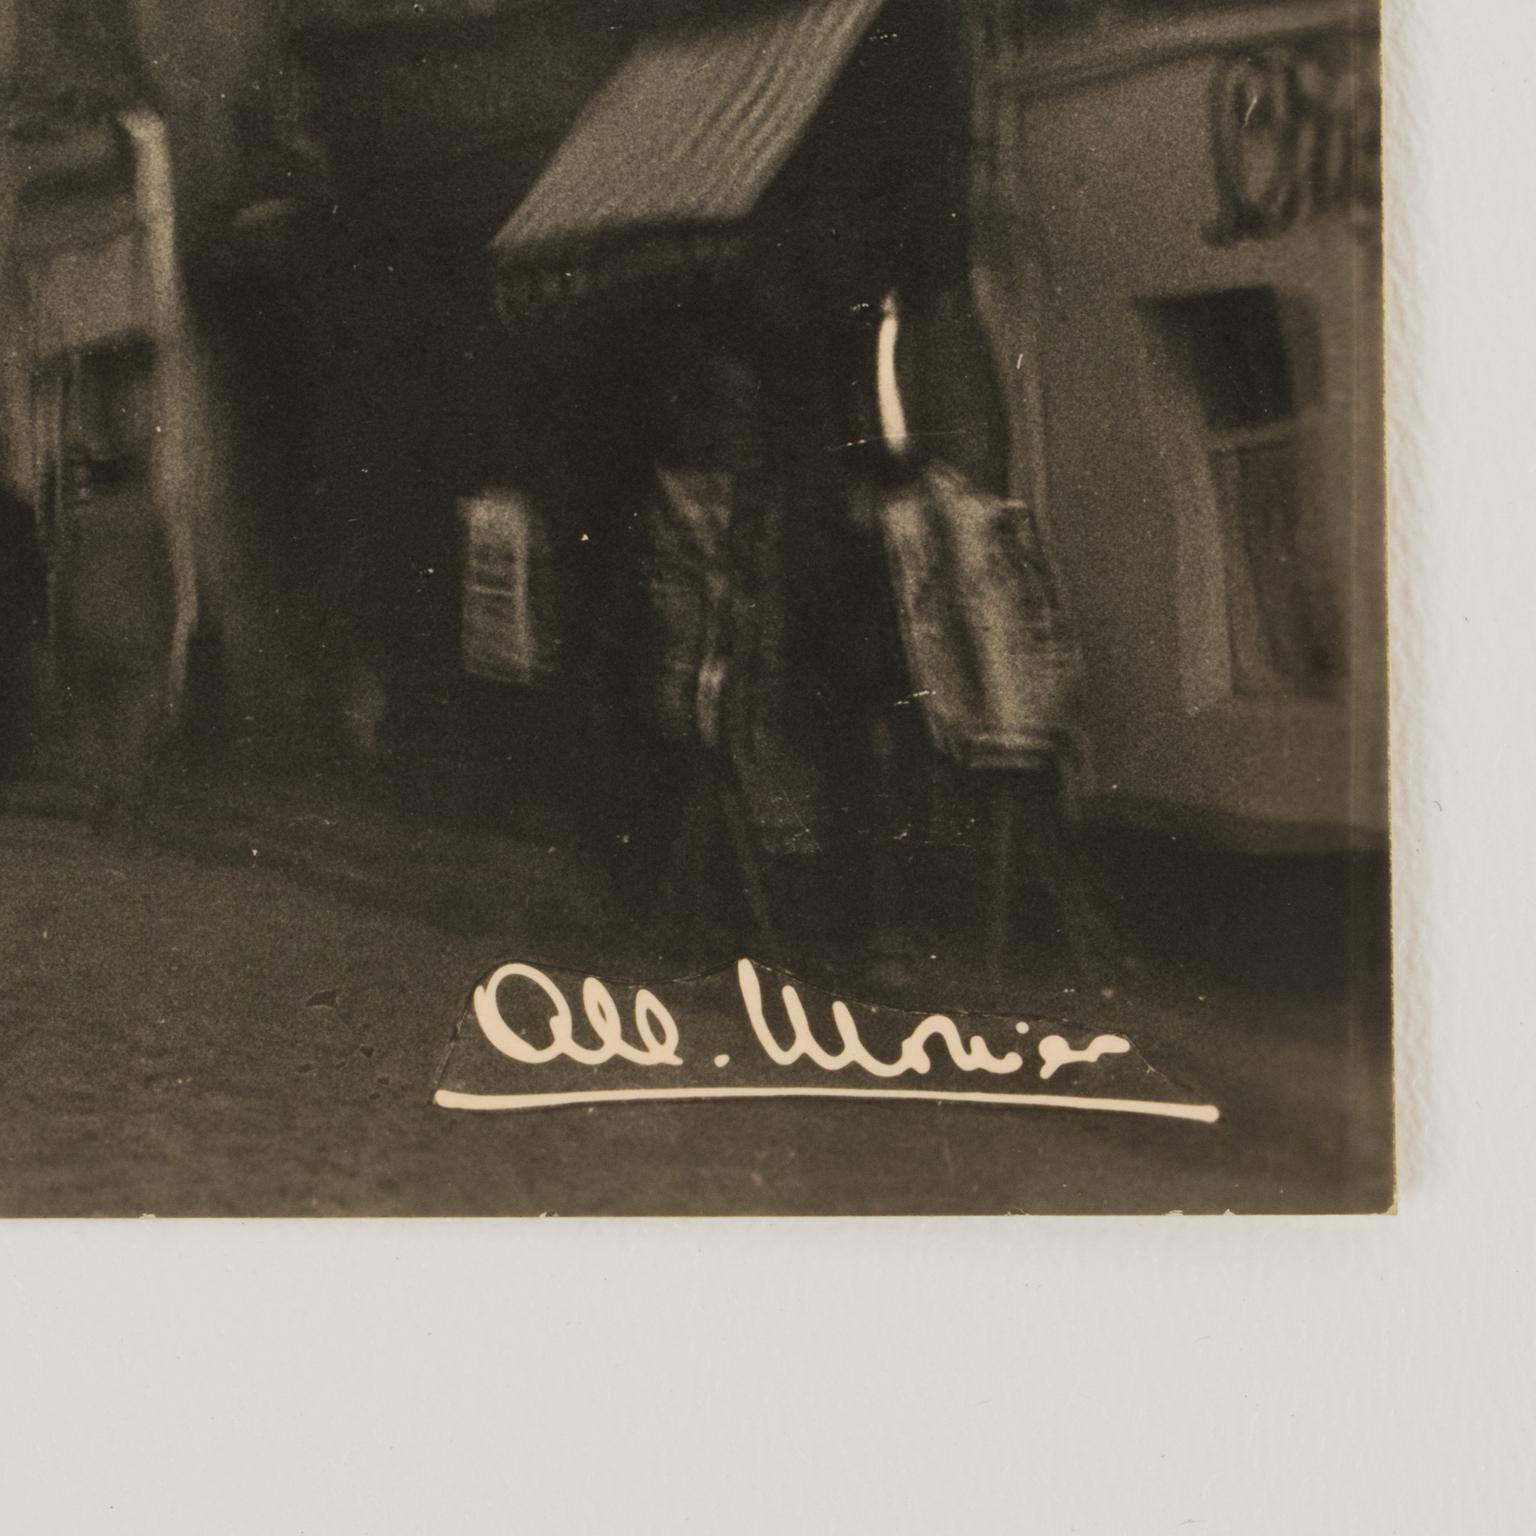 Eine Original-Silbergelatine-Schwarzweißfotografie-Postkarte von Albert Monier. Artistische Ansicht des Viertels Montmartre in Paris, 1955. Im Hintergrund ist die Kuppel der Basilika Sacré-Coeur zu sehen.
Merkmale:
Original-Postkarte mit